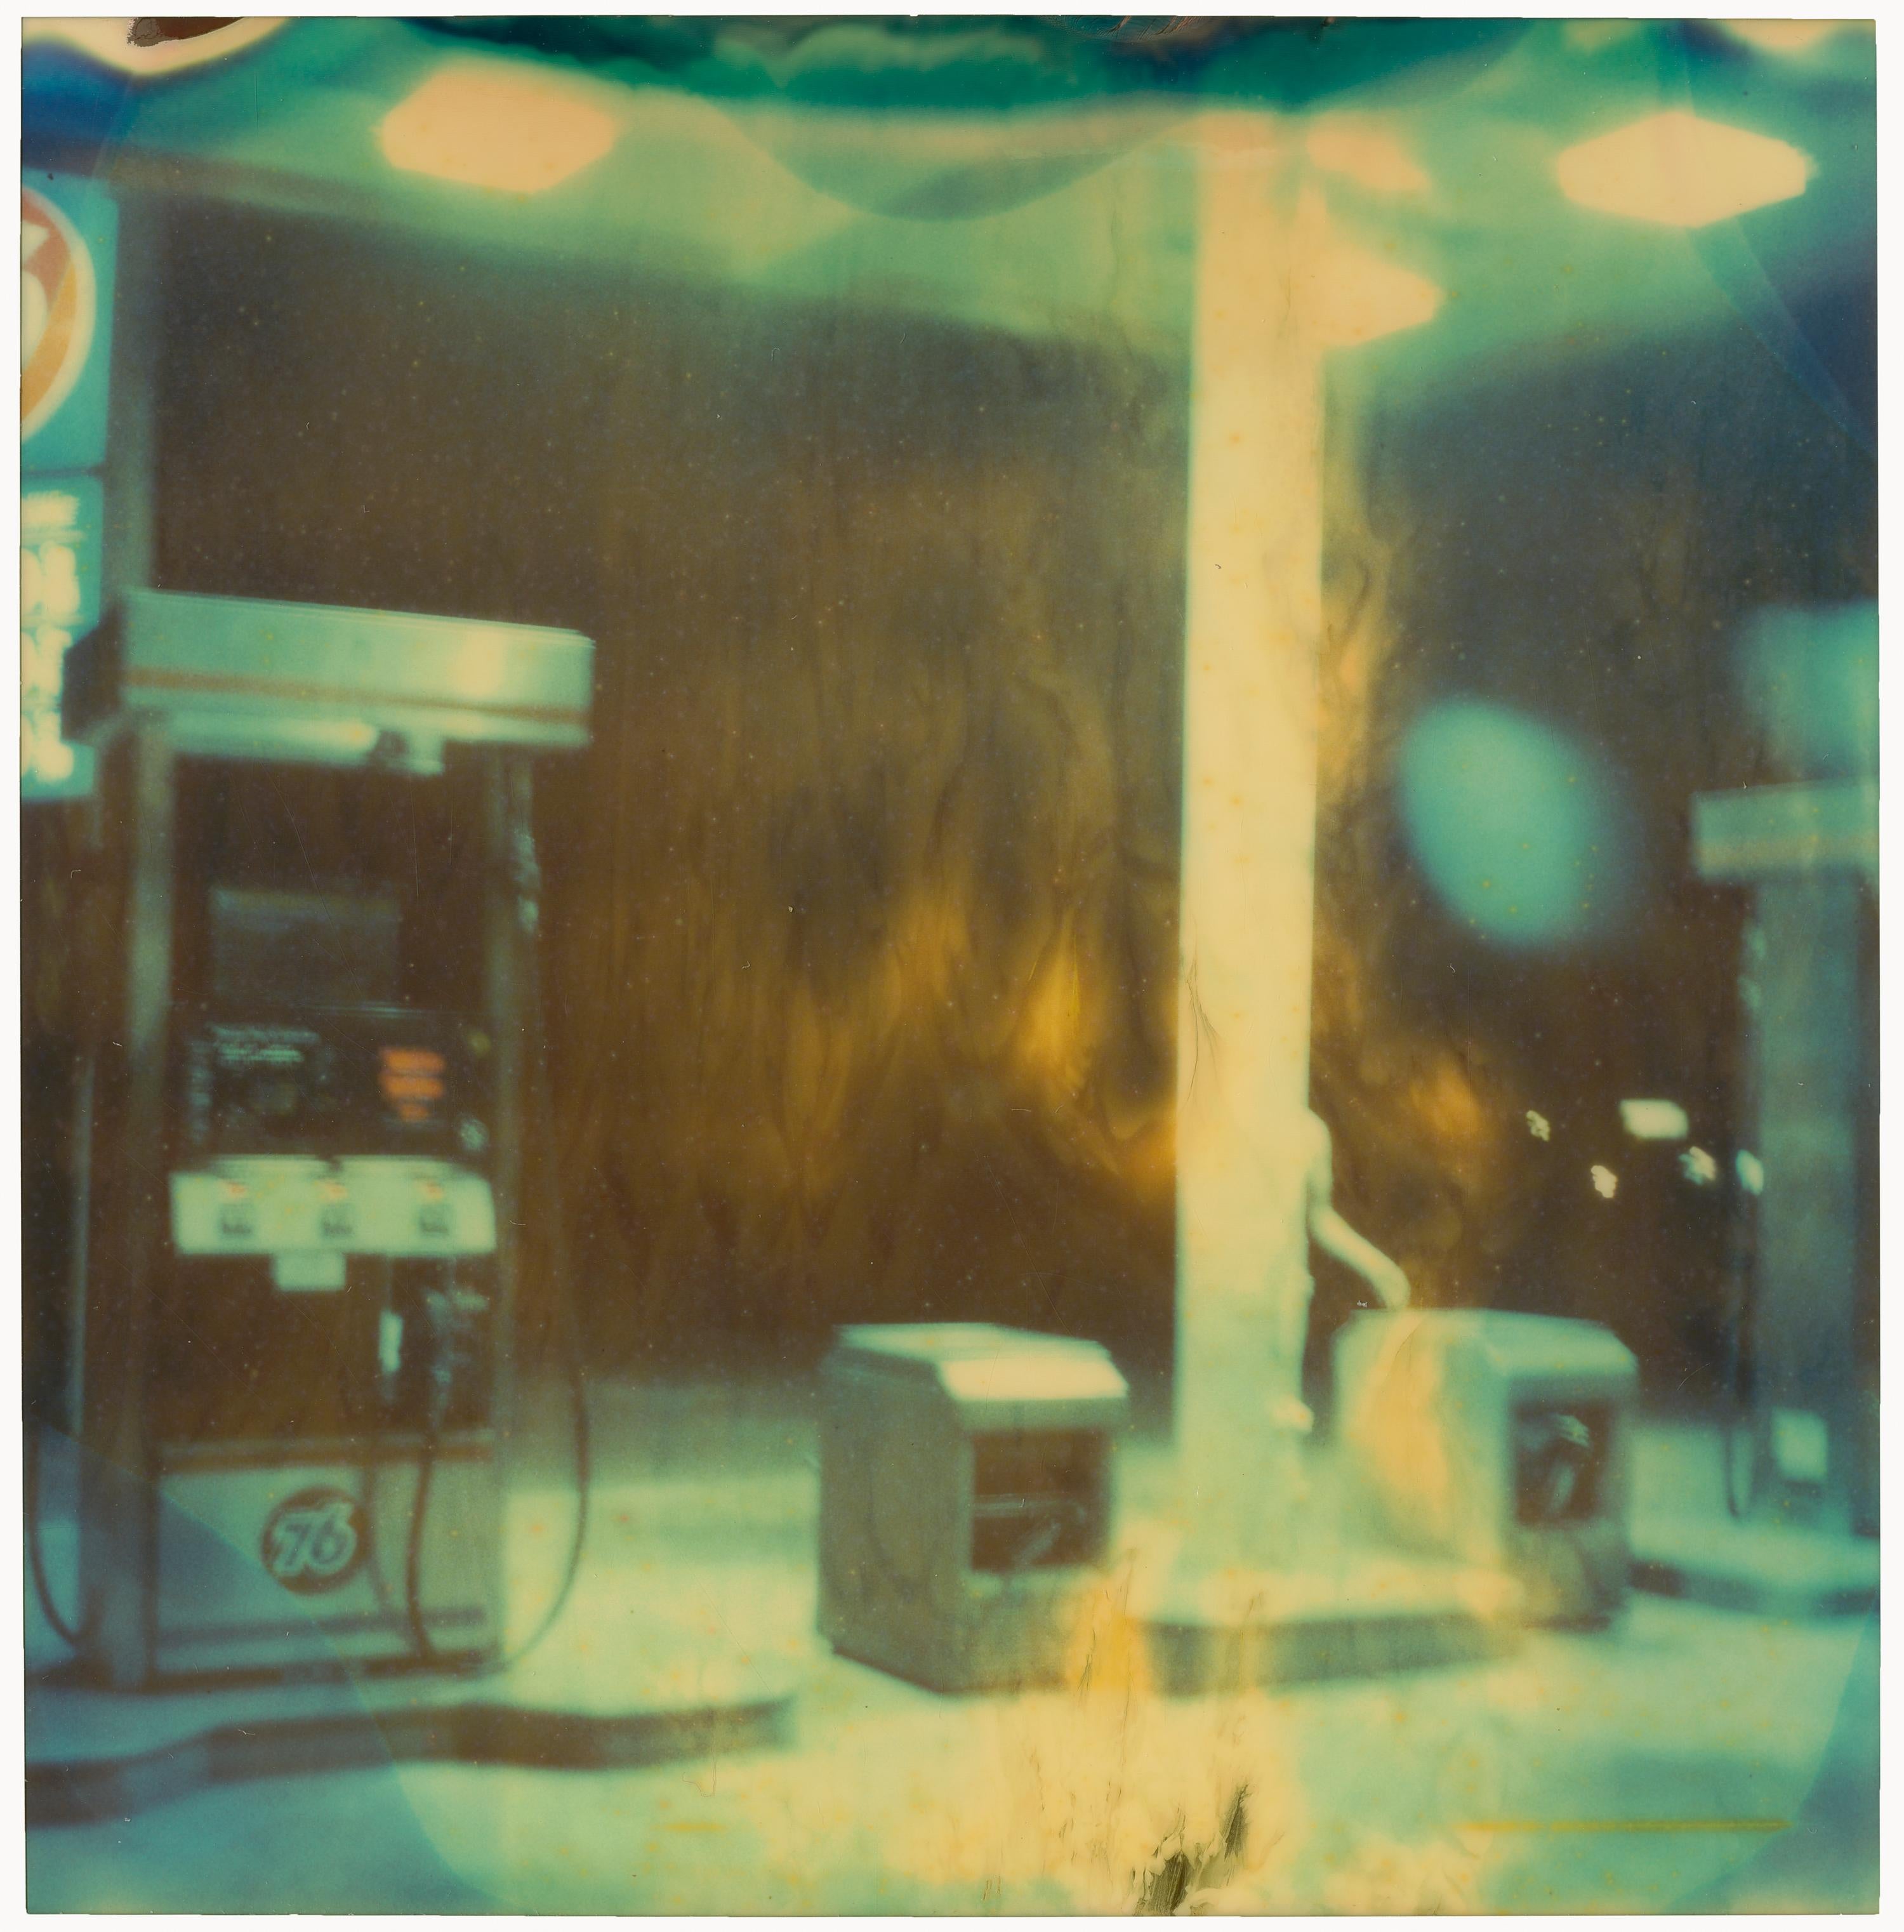 Tankstelle bei Nacht I (Stranger than Paradise) - 2006

Auflage 1/5, 
48x46 pro Stück, 93x91cm mit Lücken installiert. 
4 analoge C-Prints, von der Künstlerin handgedruckt, basierend auf den 4 Polaroids.  
Montiert auf Aluminium mit mattem